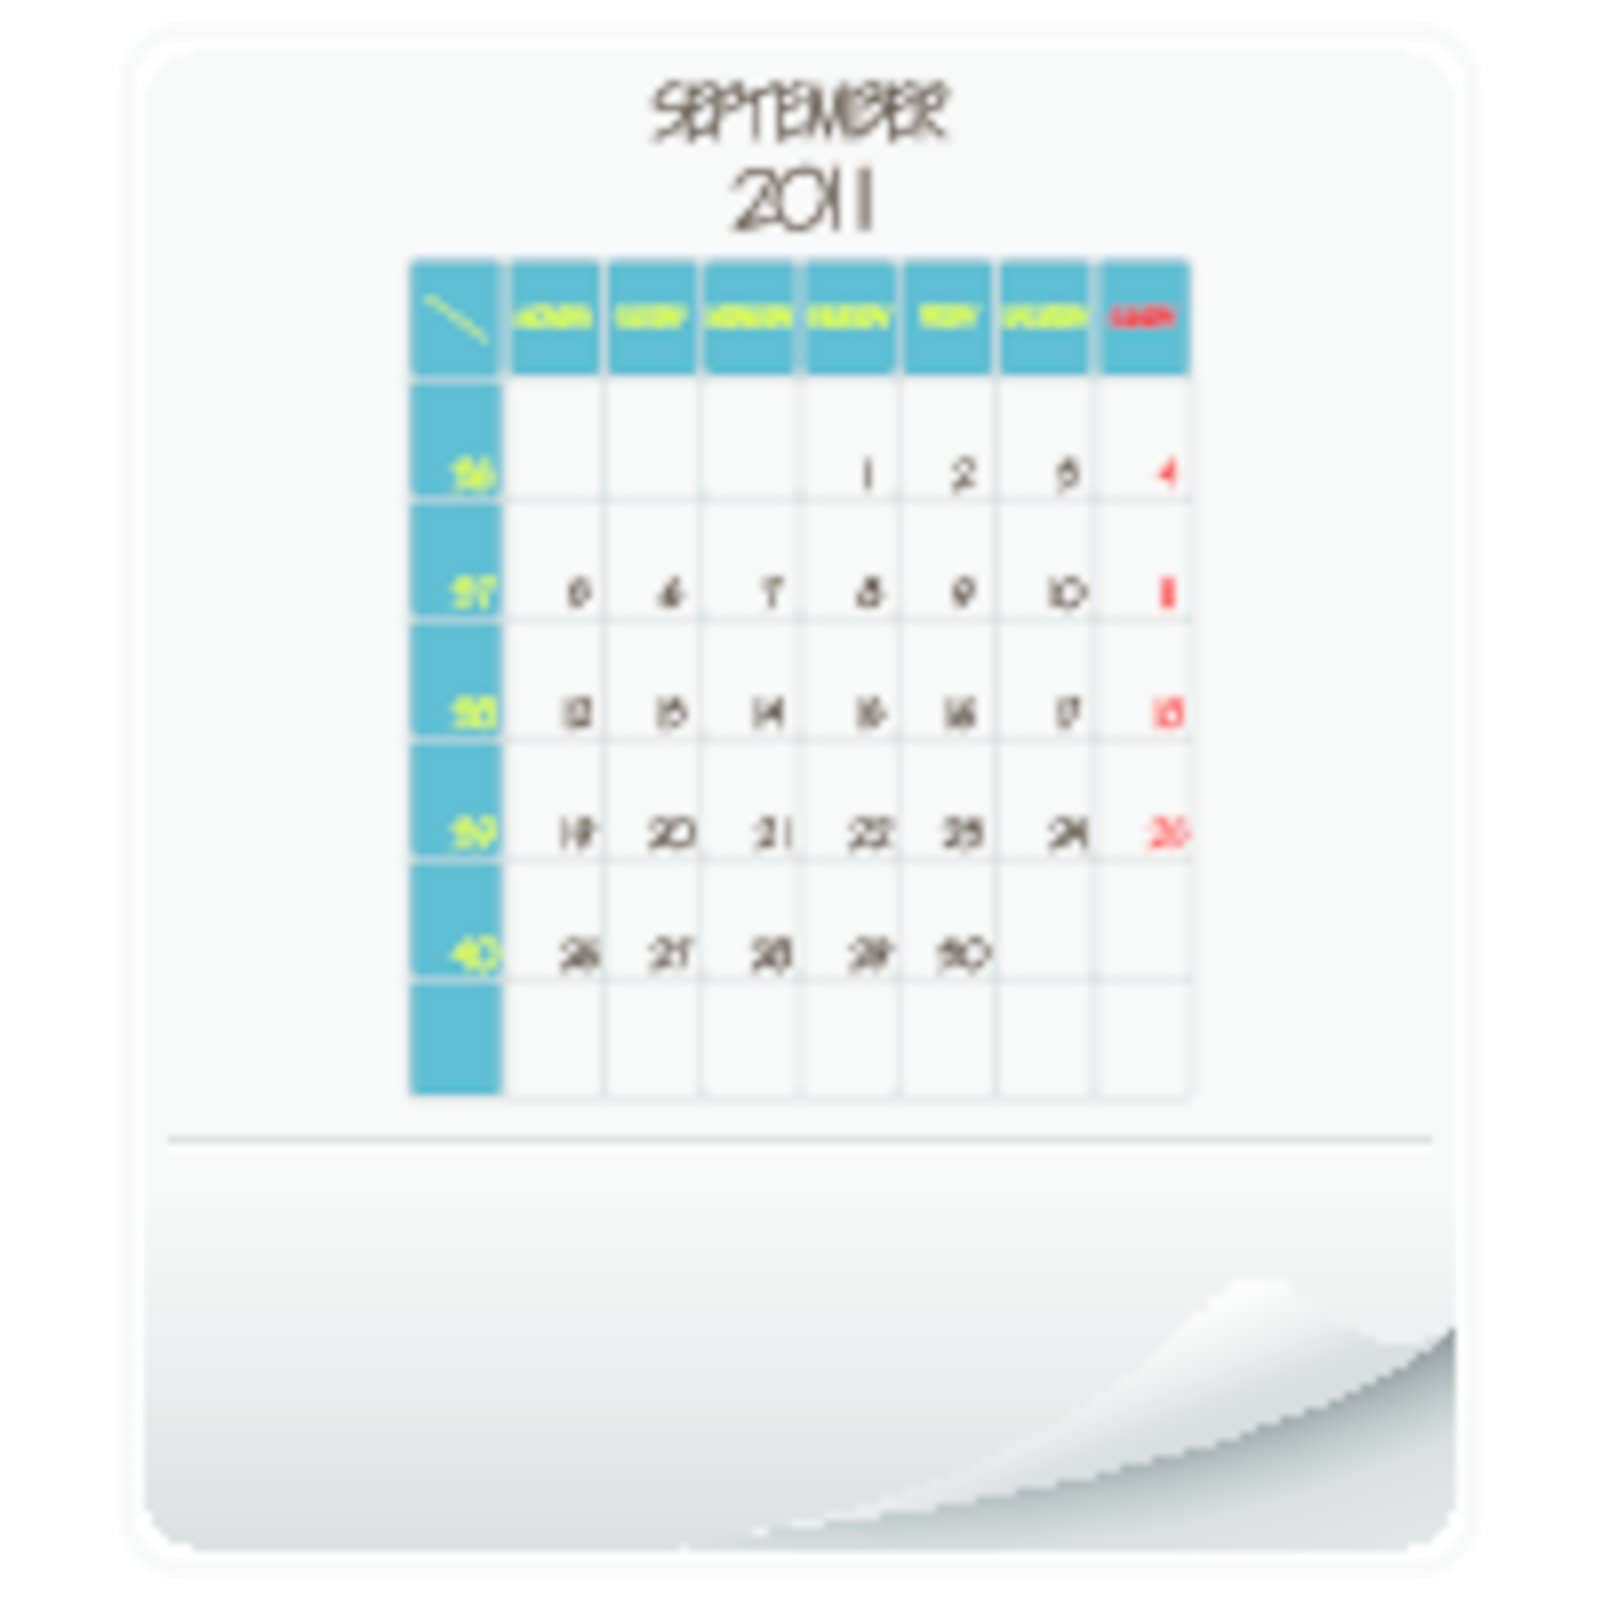 2011 calendar september by robertosch